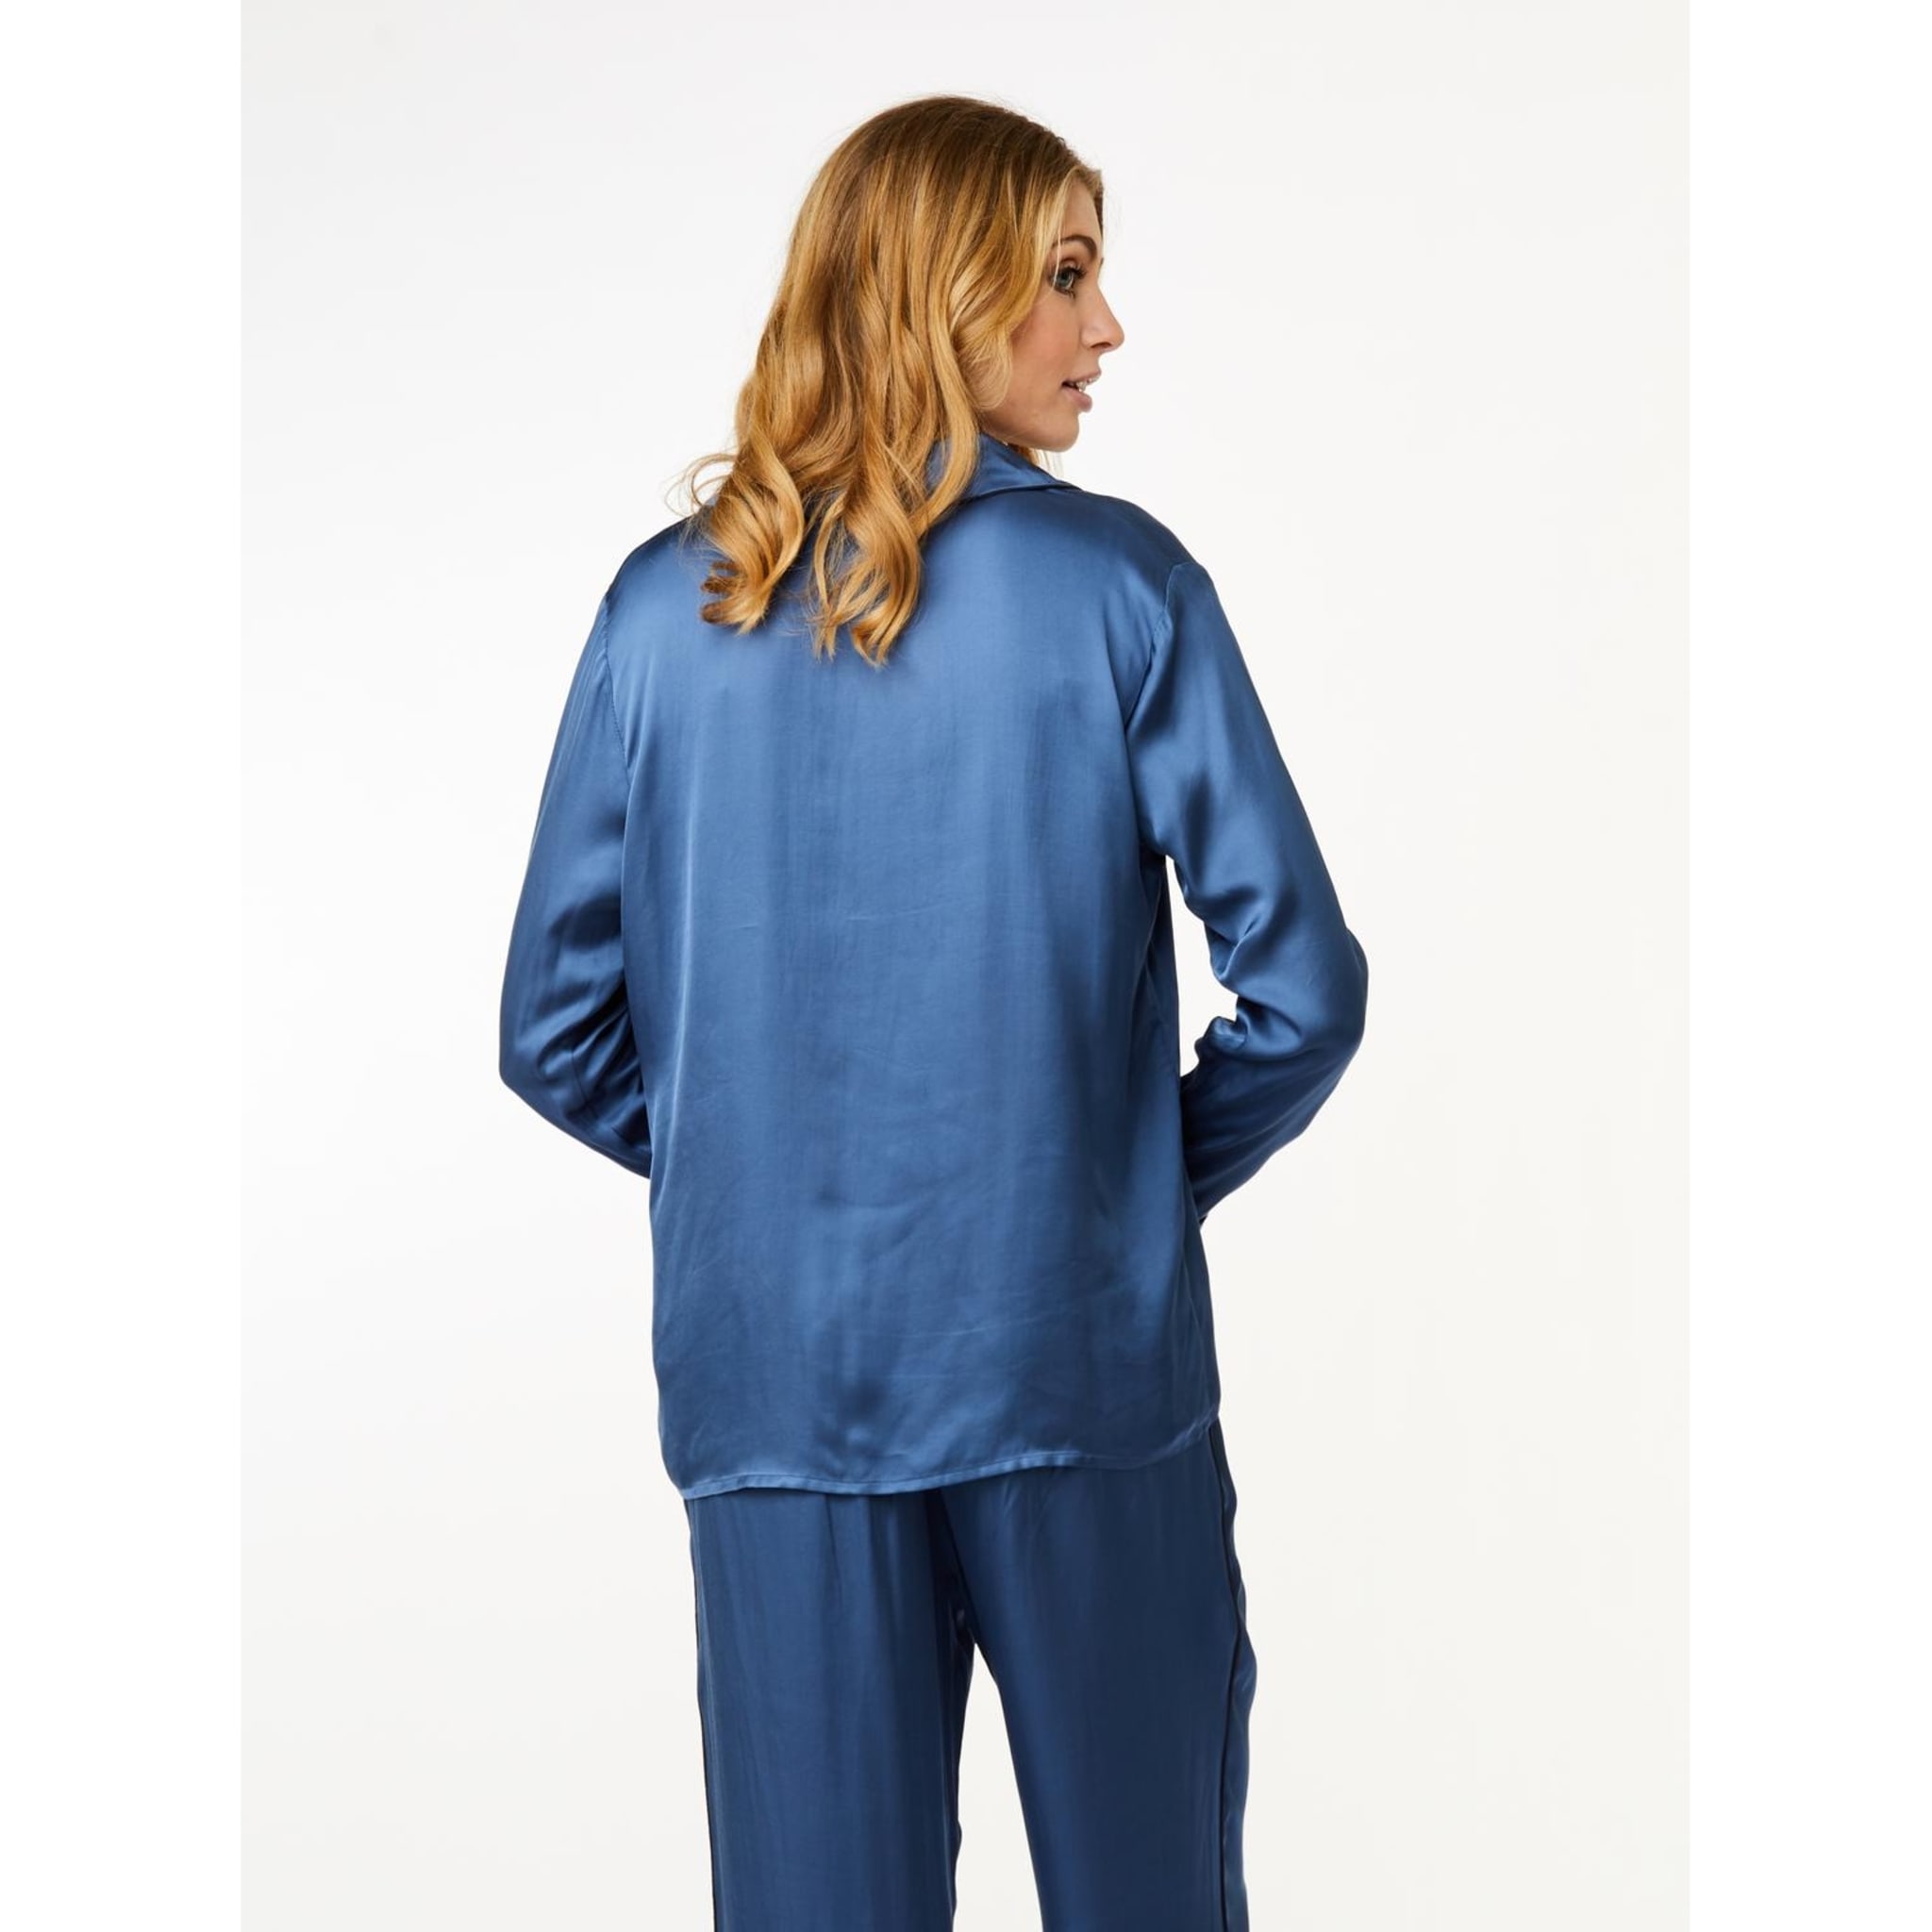 Josephine Pajamas Shirt, ensign blue